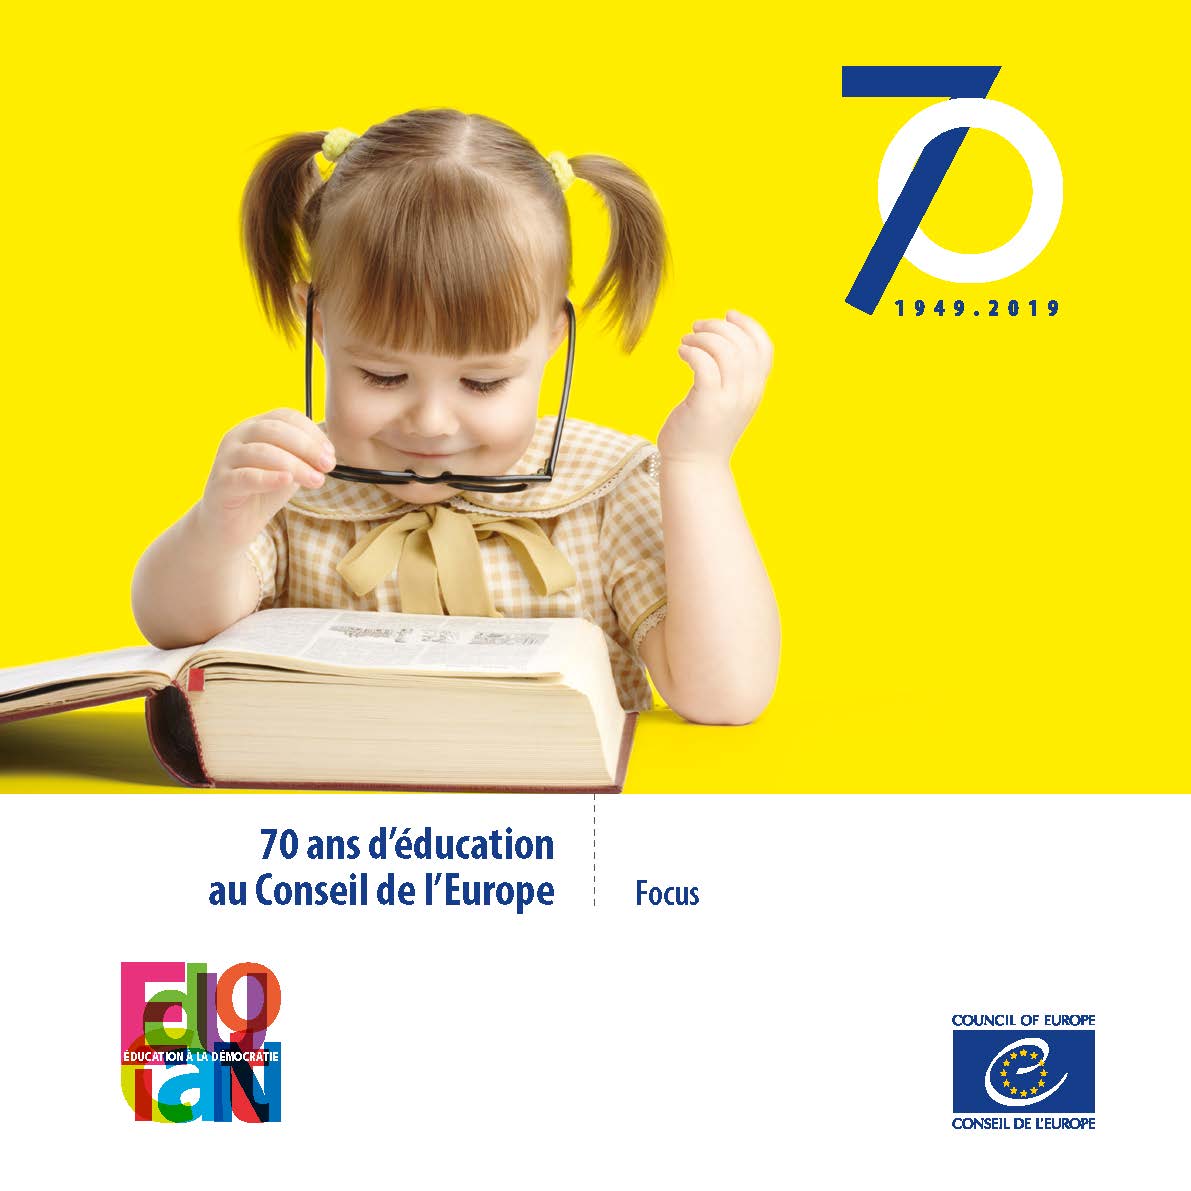 70 ans d'éducation au Conseil de l'Europe